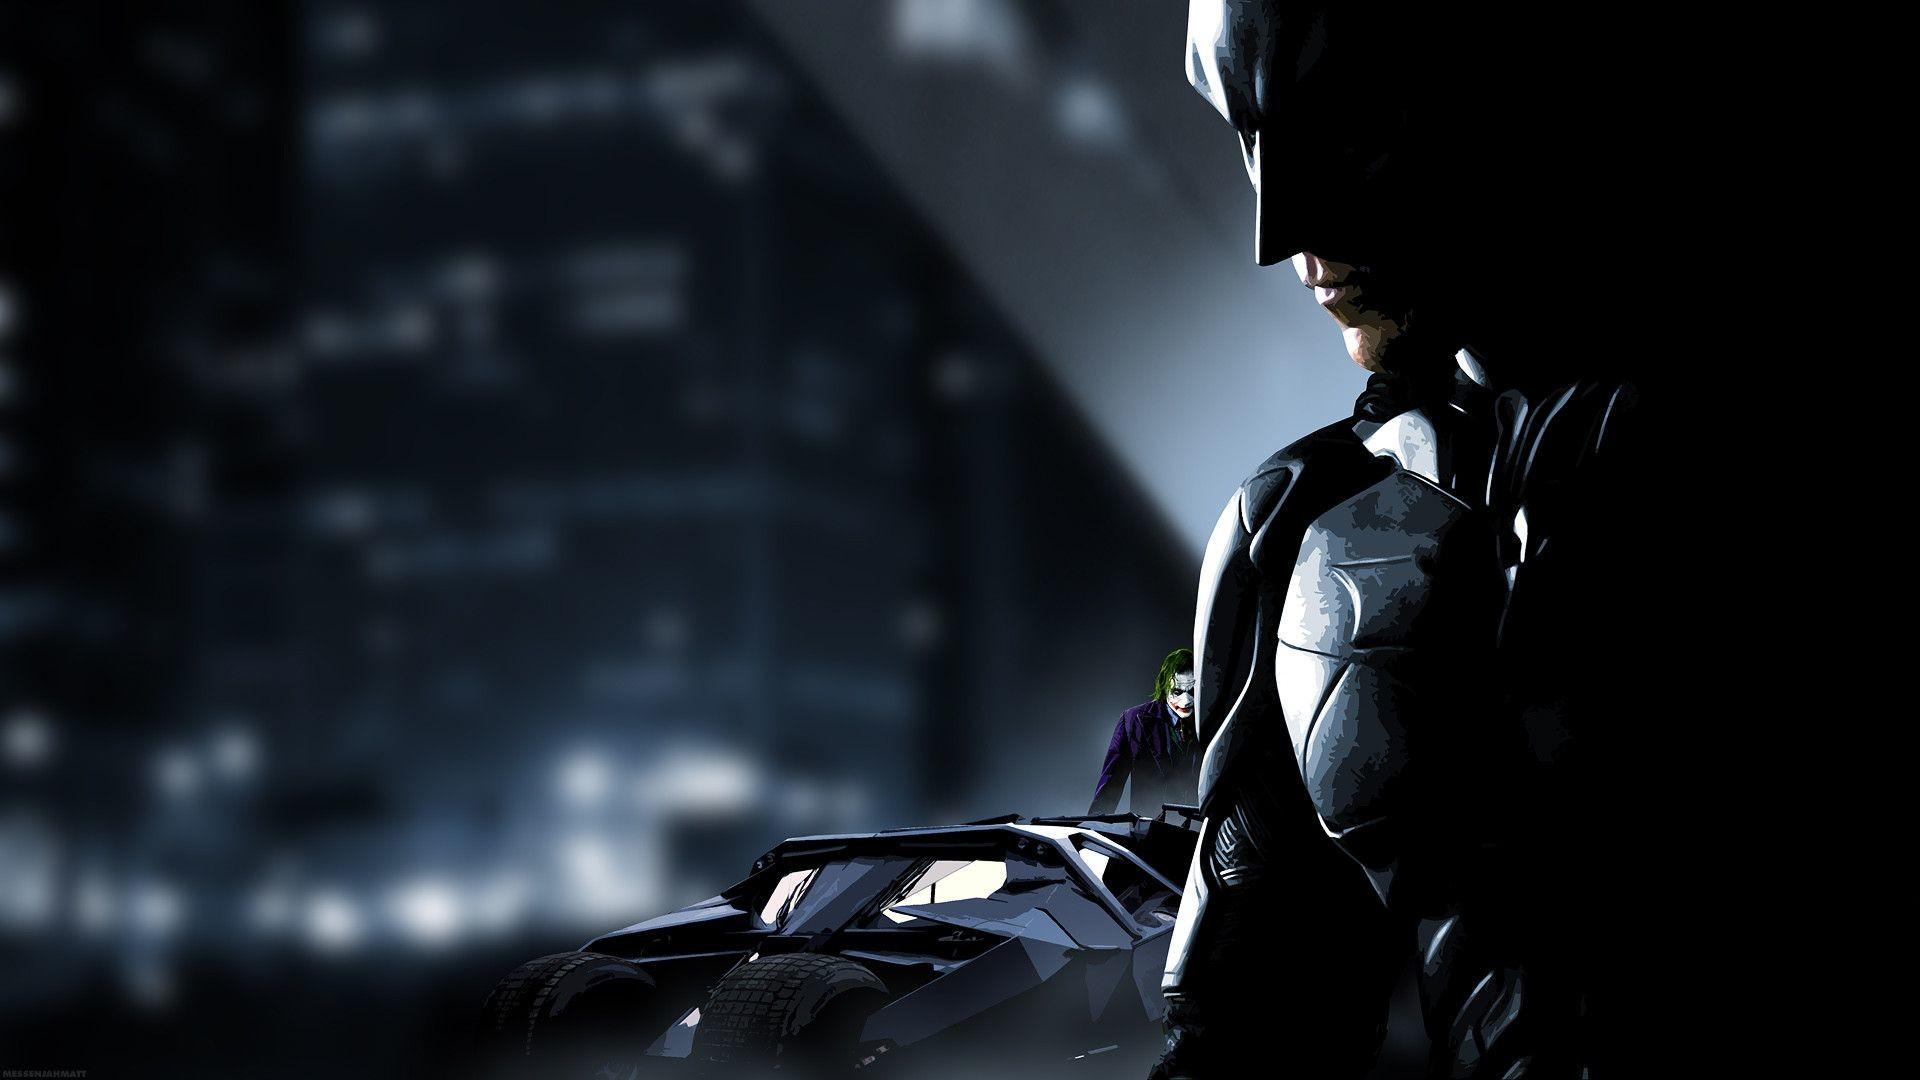 Batman HD Wallpaper 1080p